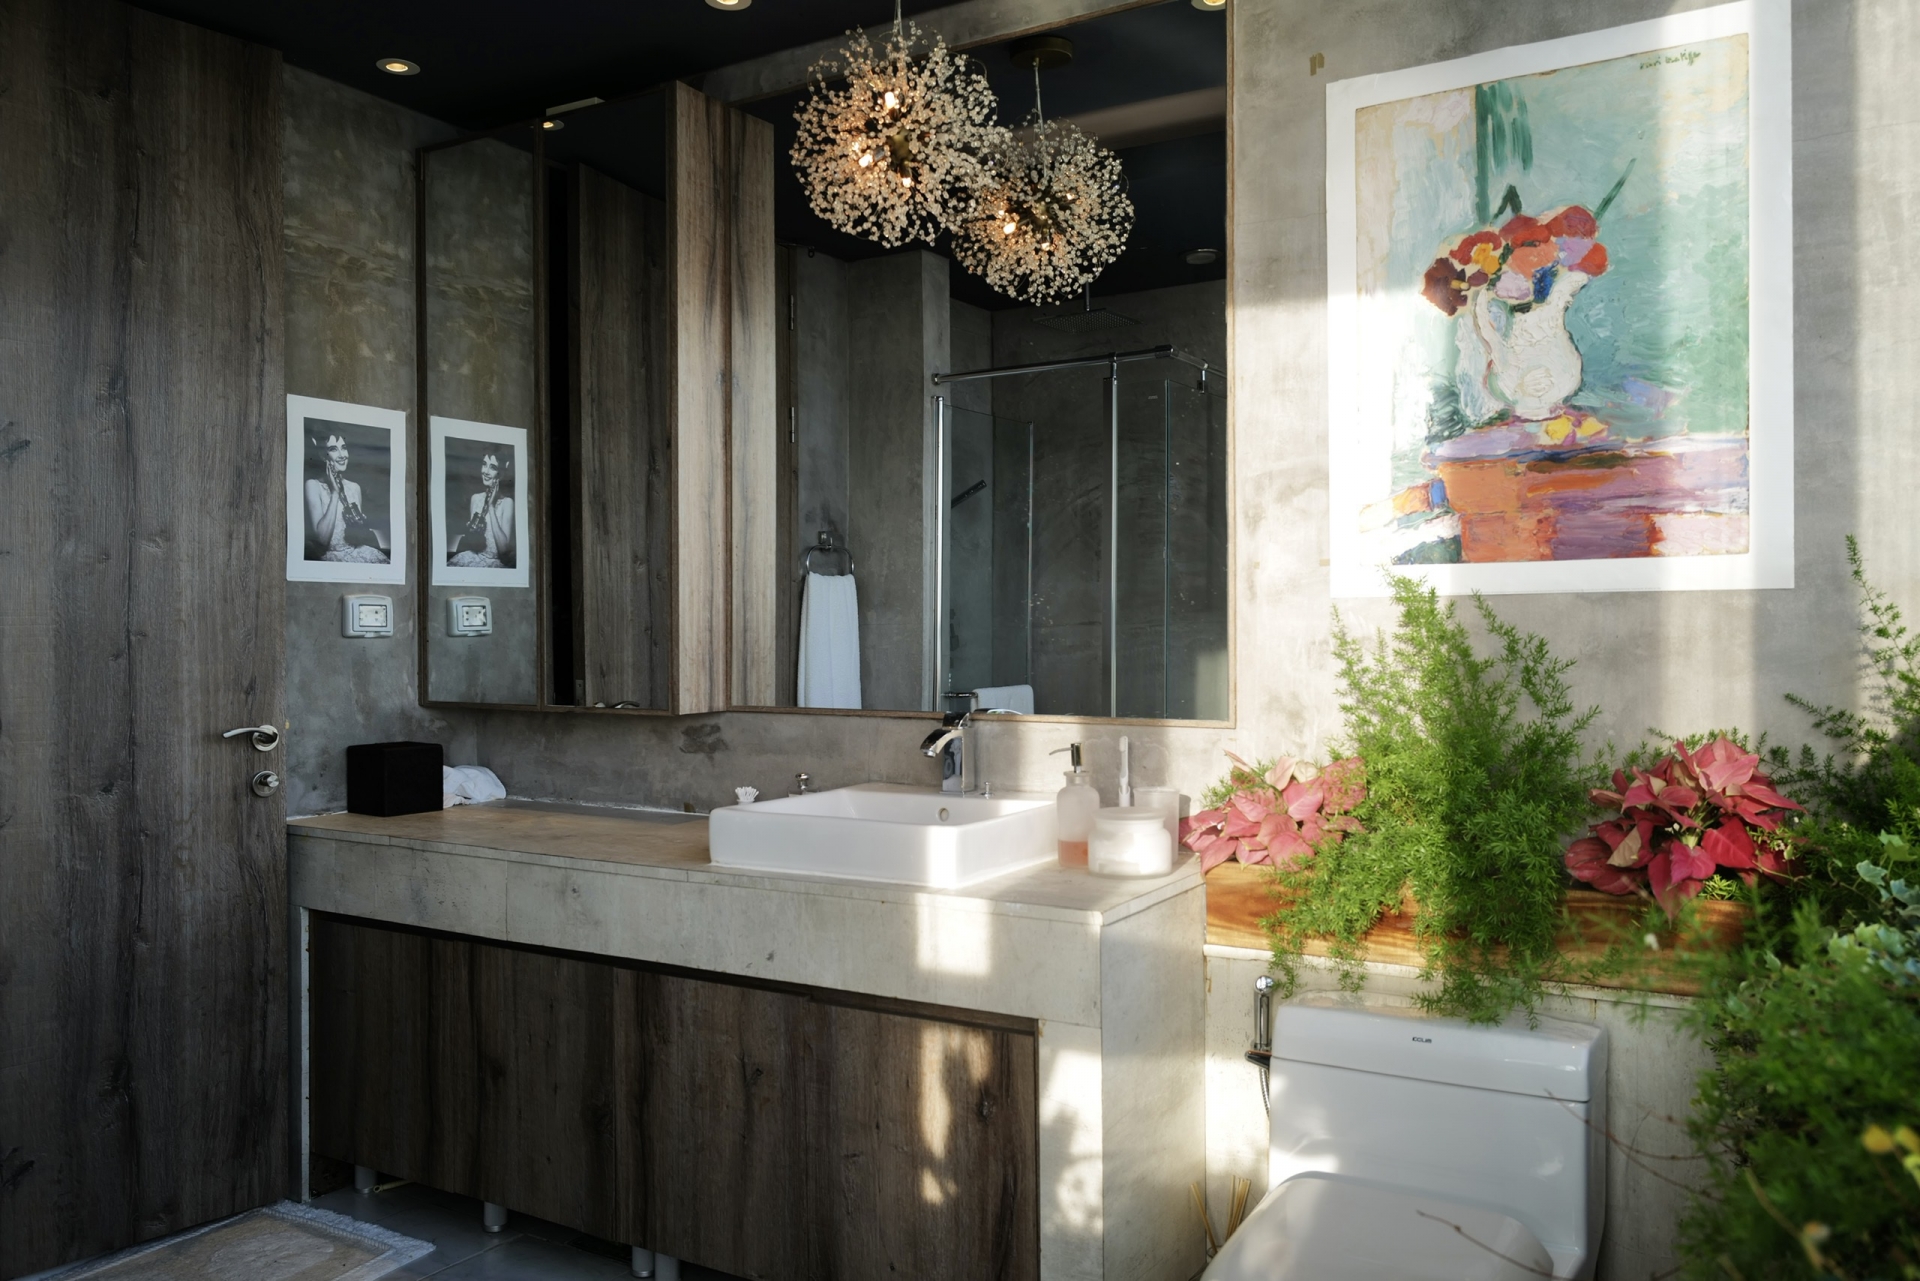 Nhà tắm cũng được thiết kế chủ đạo với chất liệu bằng gỗ, hòa vào gam màu xanh của cây cảnh